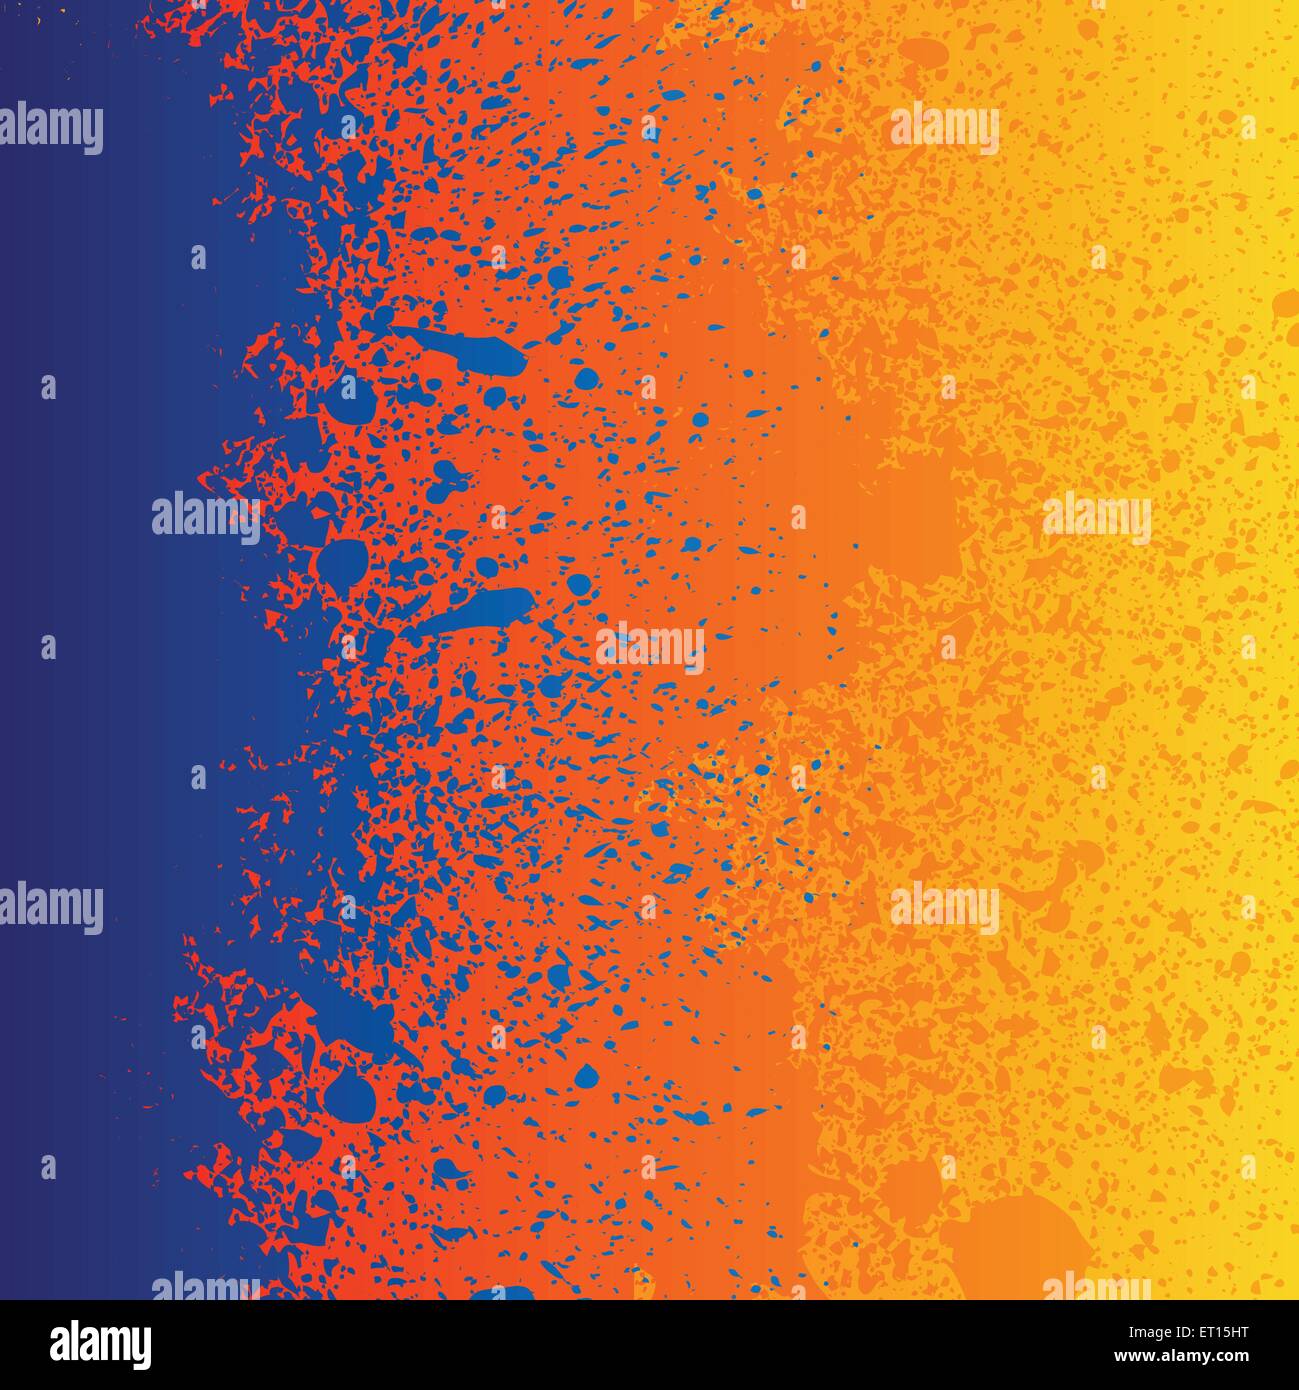 Bunte Blau Orange Und Gelbe Farbe Spritzt Hintergrund 10 Rgb Eps Vektor Illustration Stock Vektorgrafik Alamy